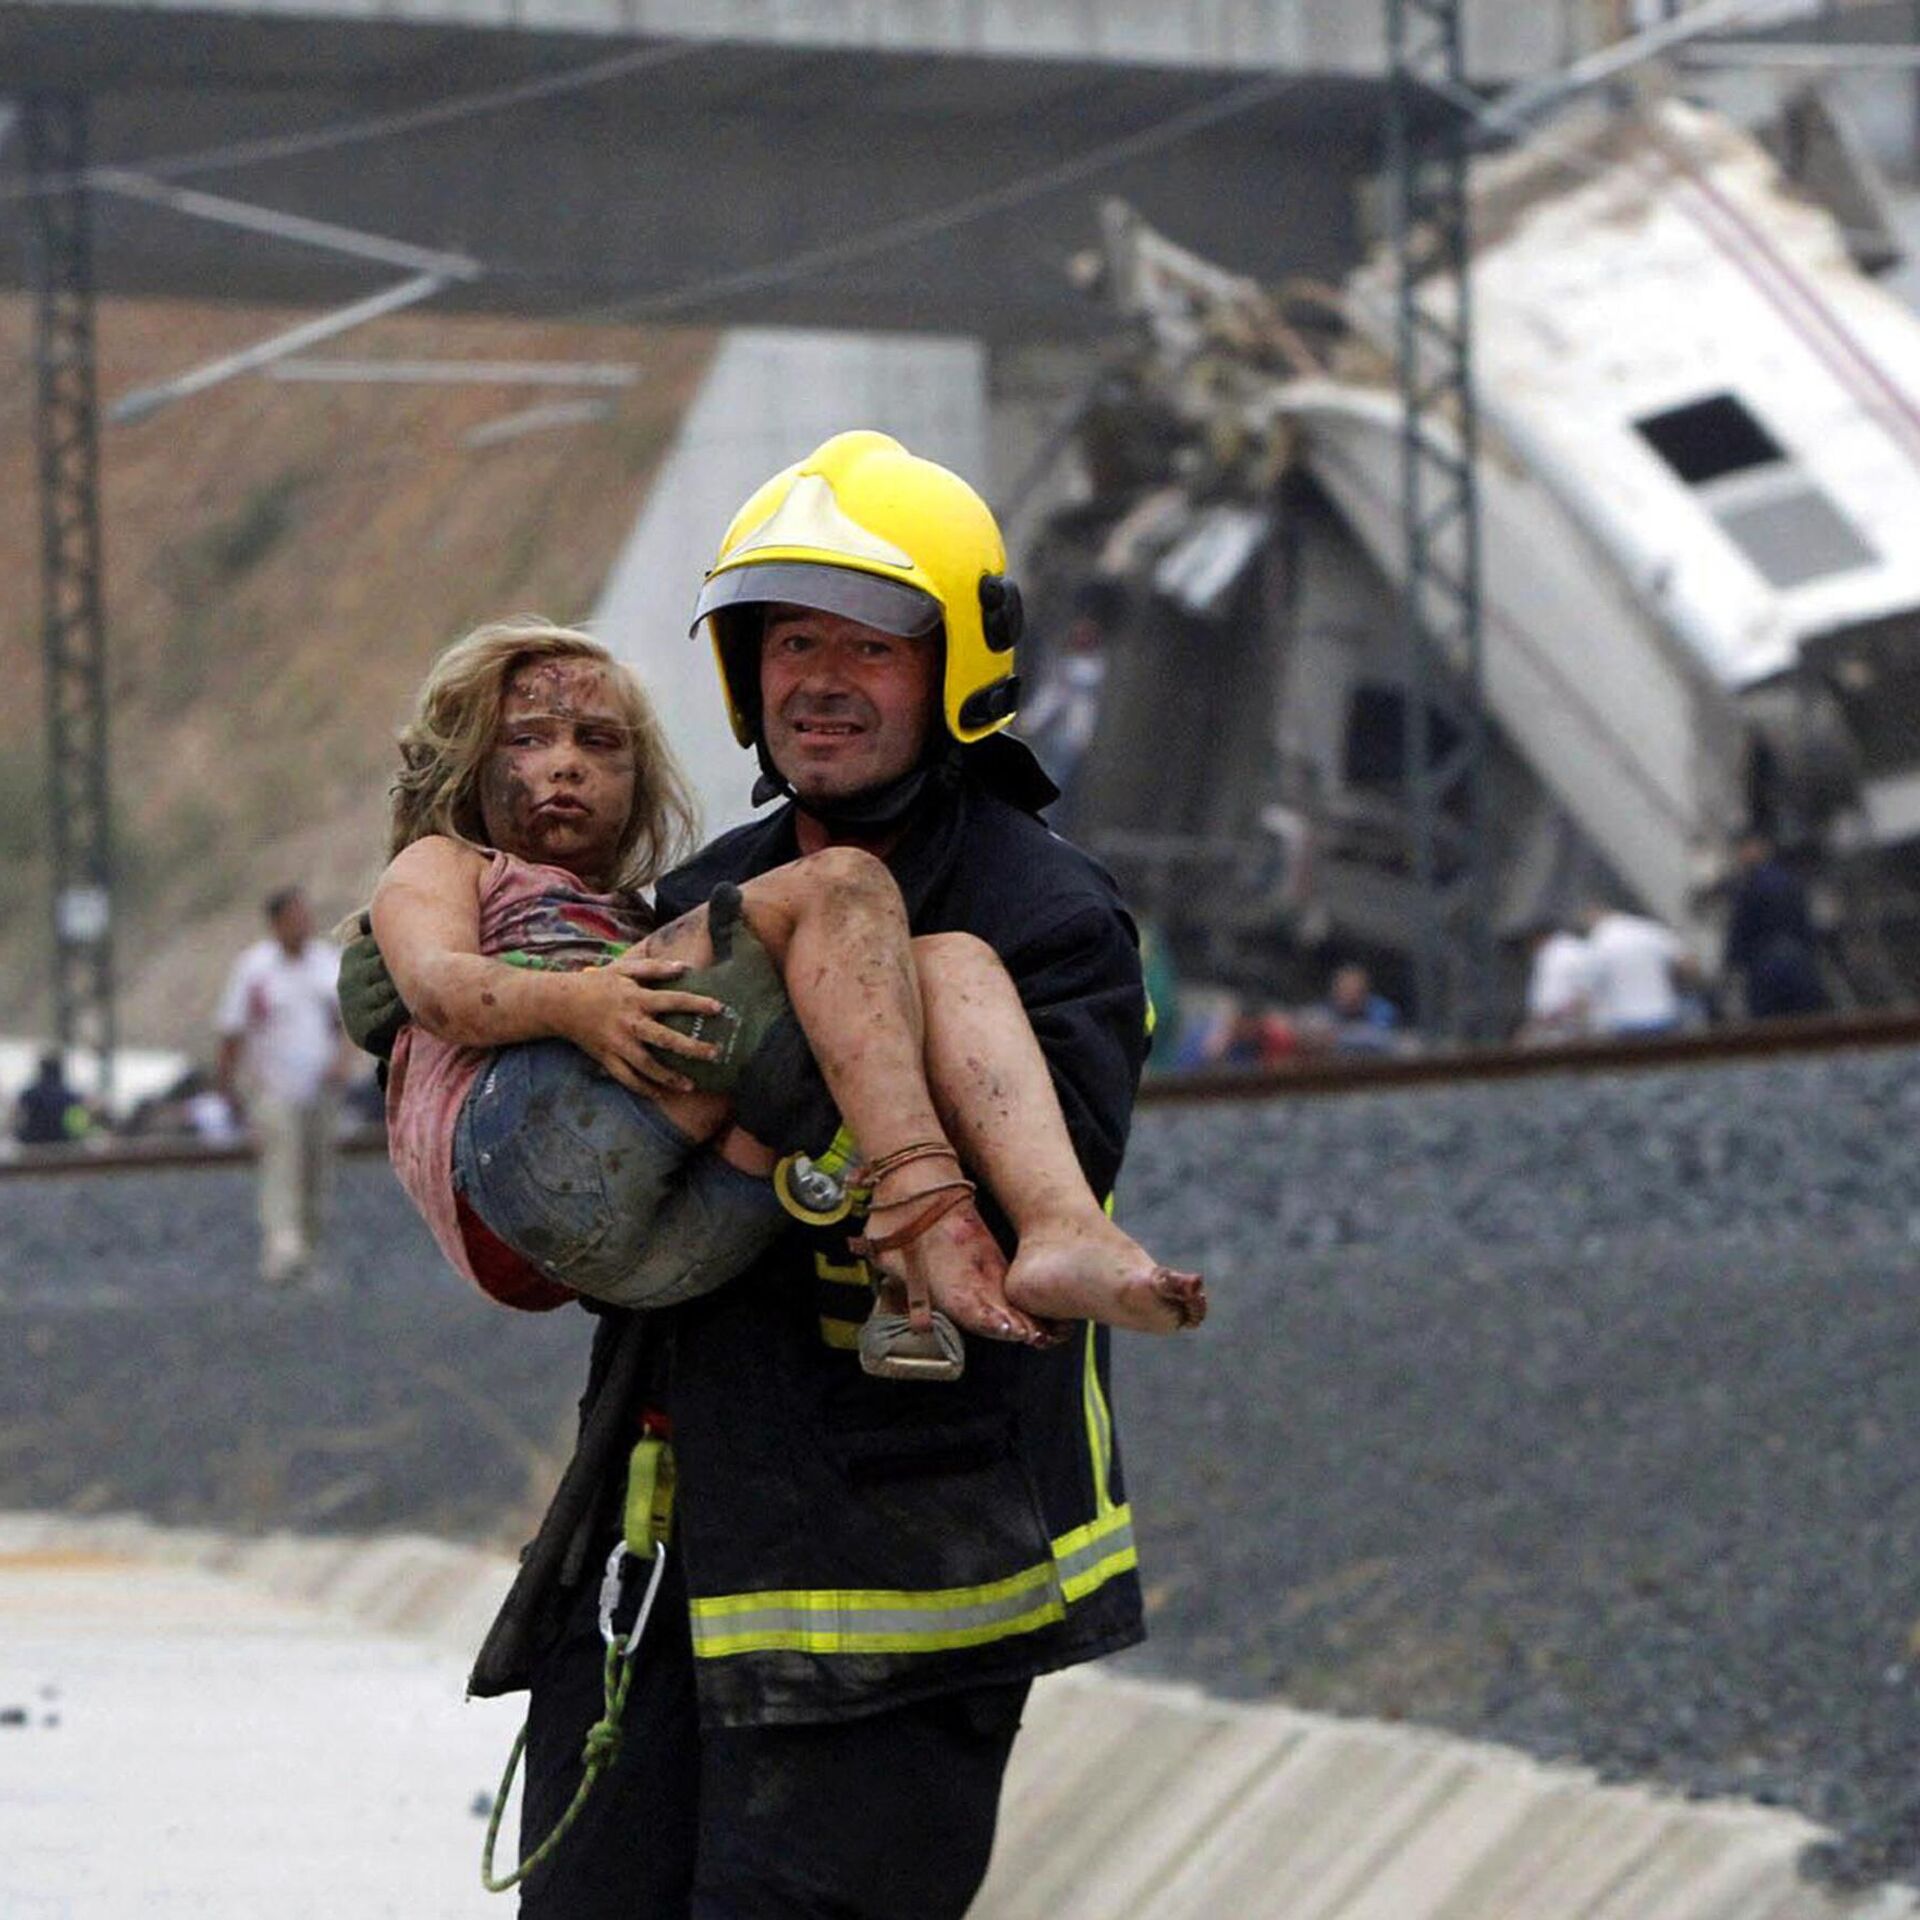 Потрясе о. Спасатели спасают людей. Пожарные спасают людей.